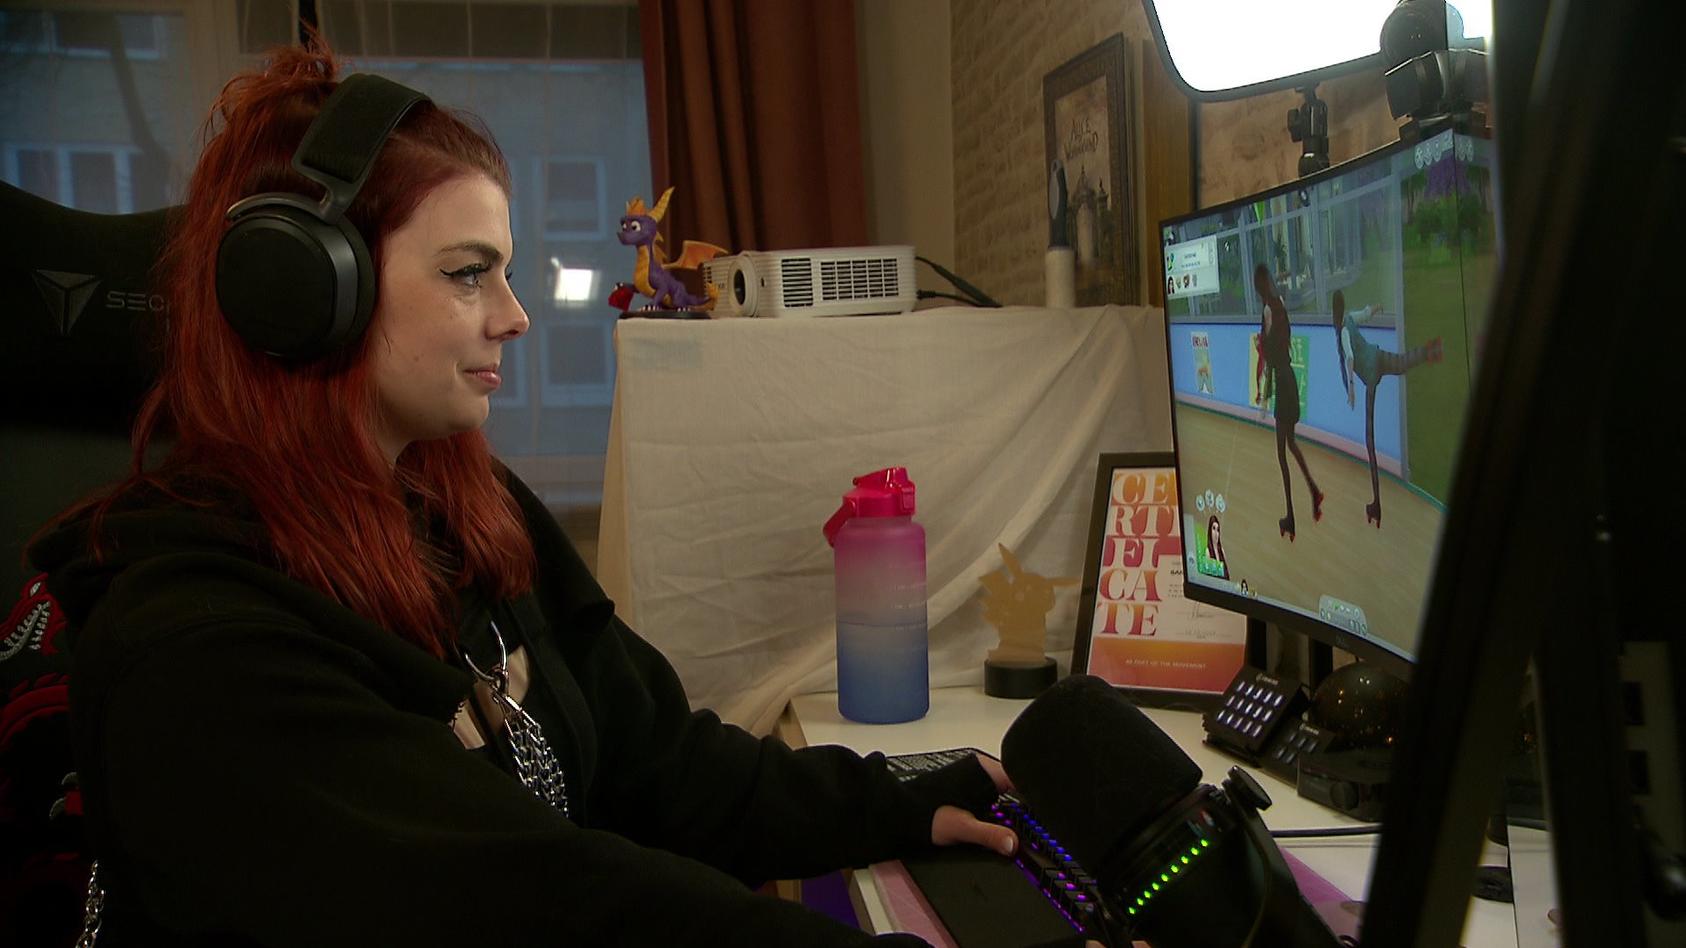 Sandra streamt unter anderem das Spiel Sims und redet dabei offen über mentale Gesundheit.